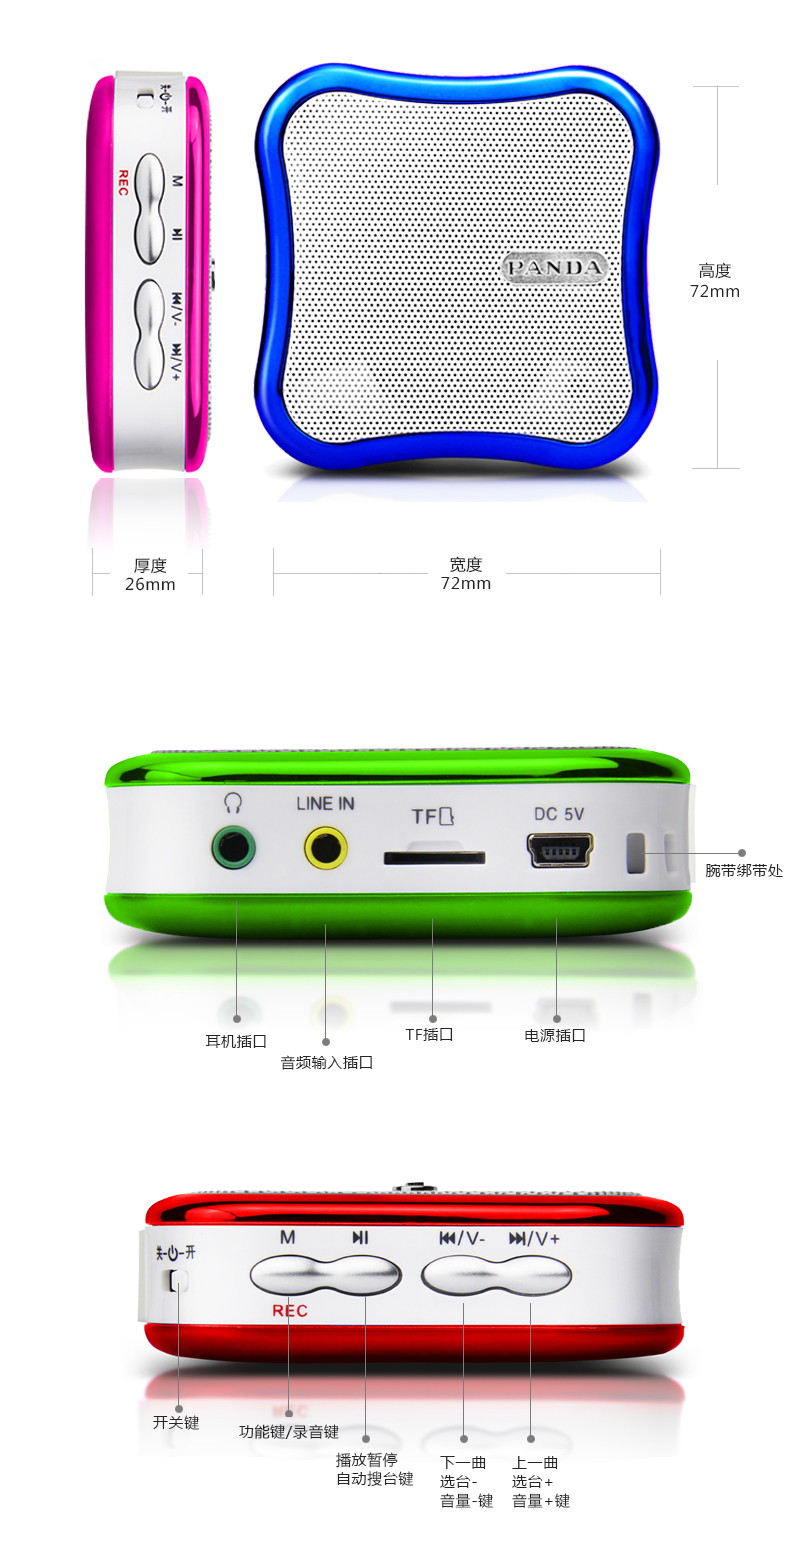 熊猫(PANDA) DS-122蓝色 迷你插卡音箱 MP3播放音箱 收音便携式插卡音箱